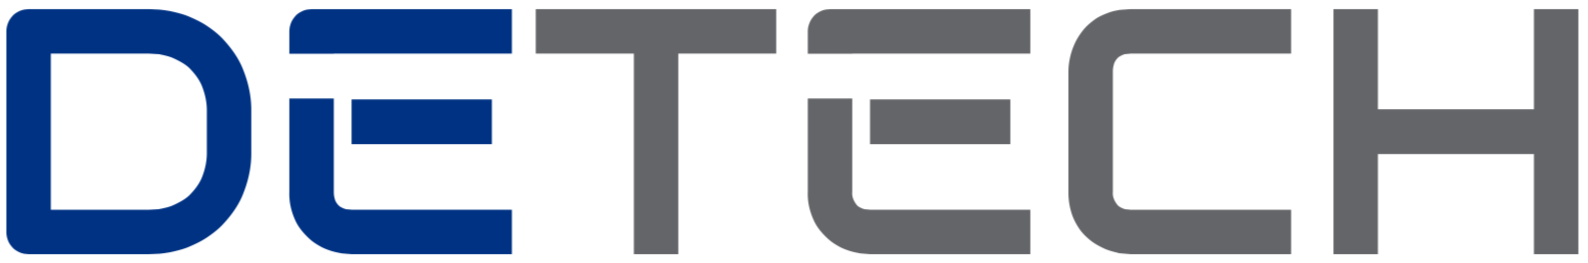 Şirket Logo